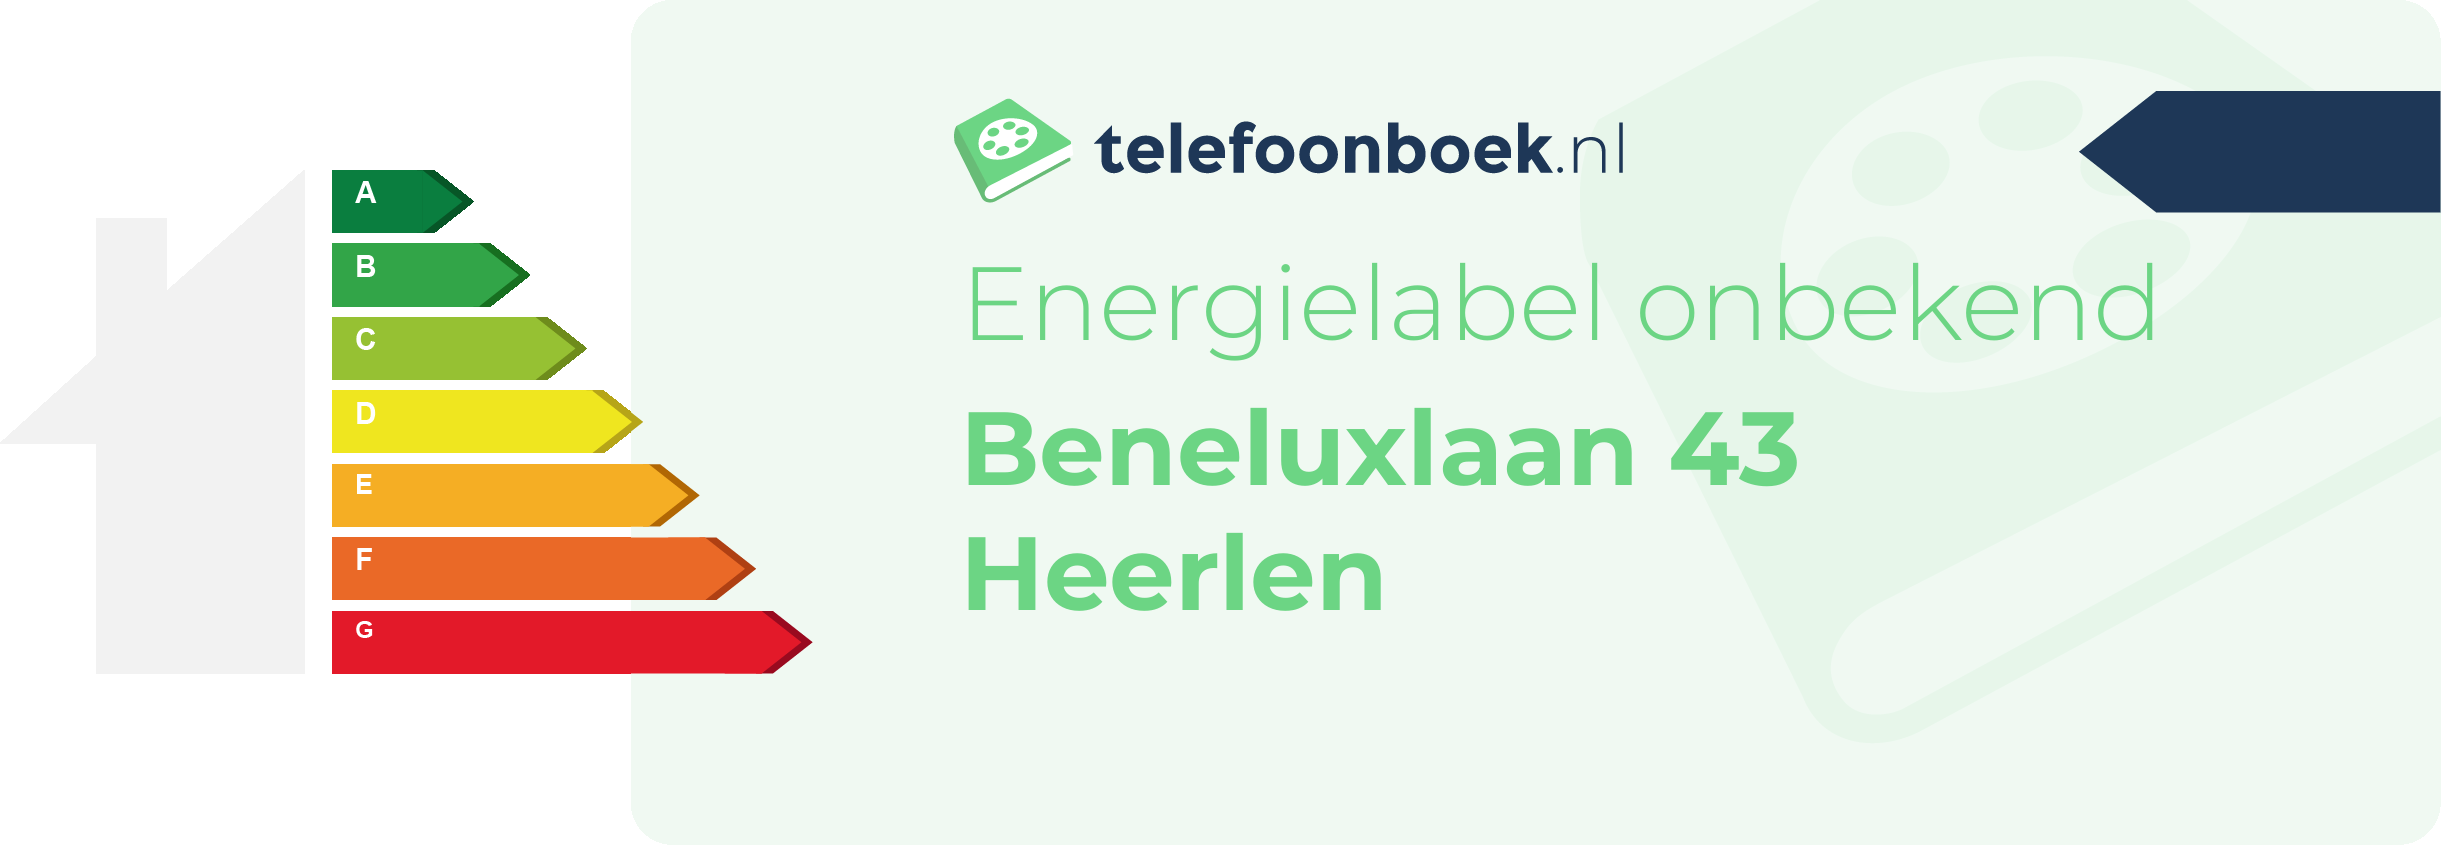 Energielabel Beneluxlaan 43 Heerlen